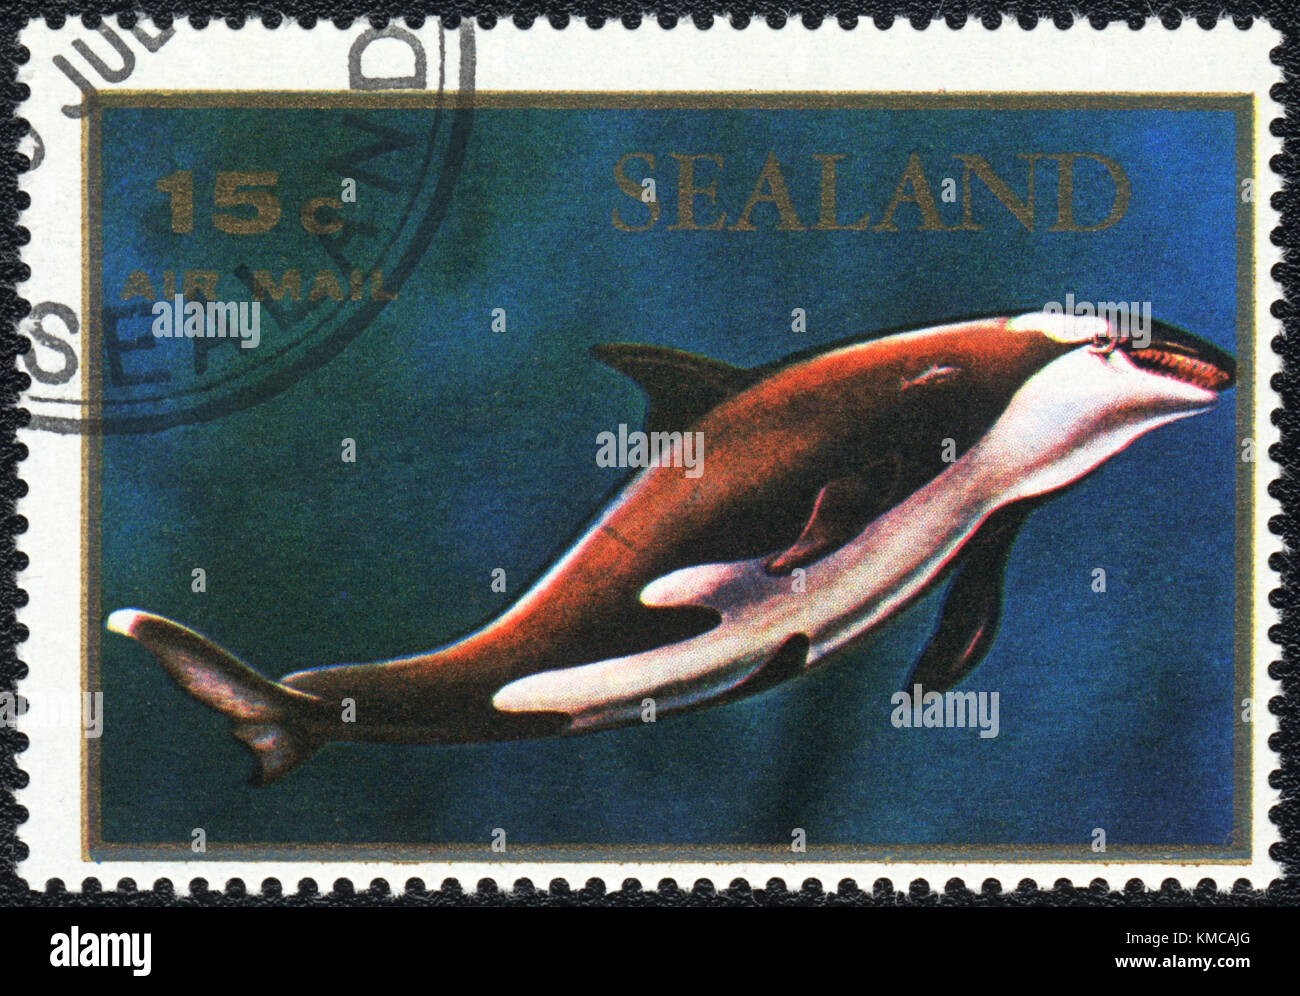 Un timbre imprimé en Principauté de Sealand montre un orcinus orca, série, vers 1970 Banque D'Images